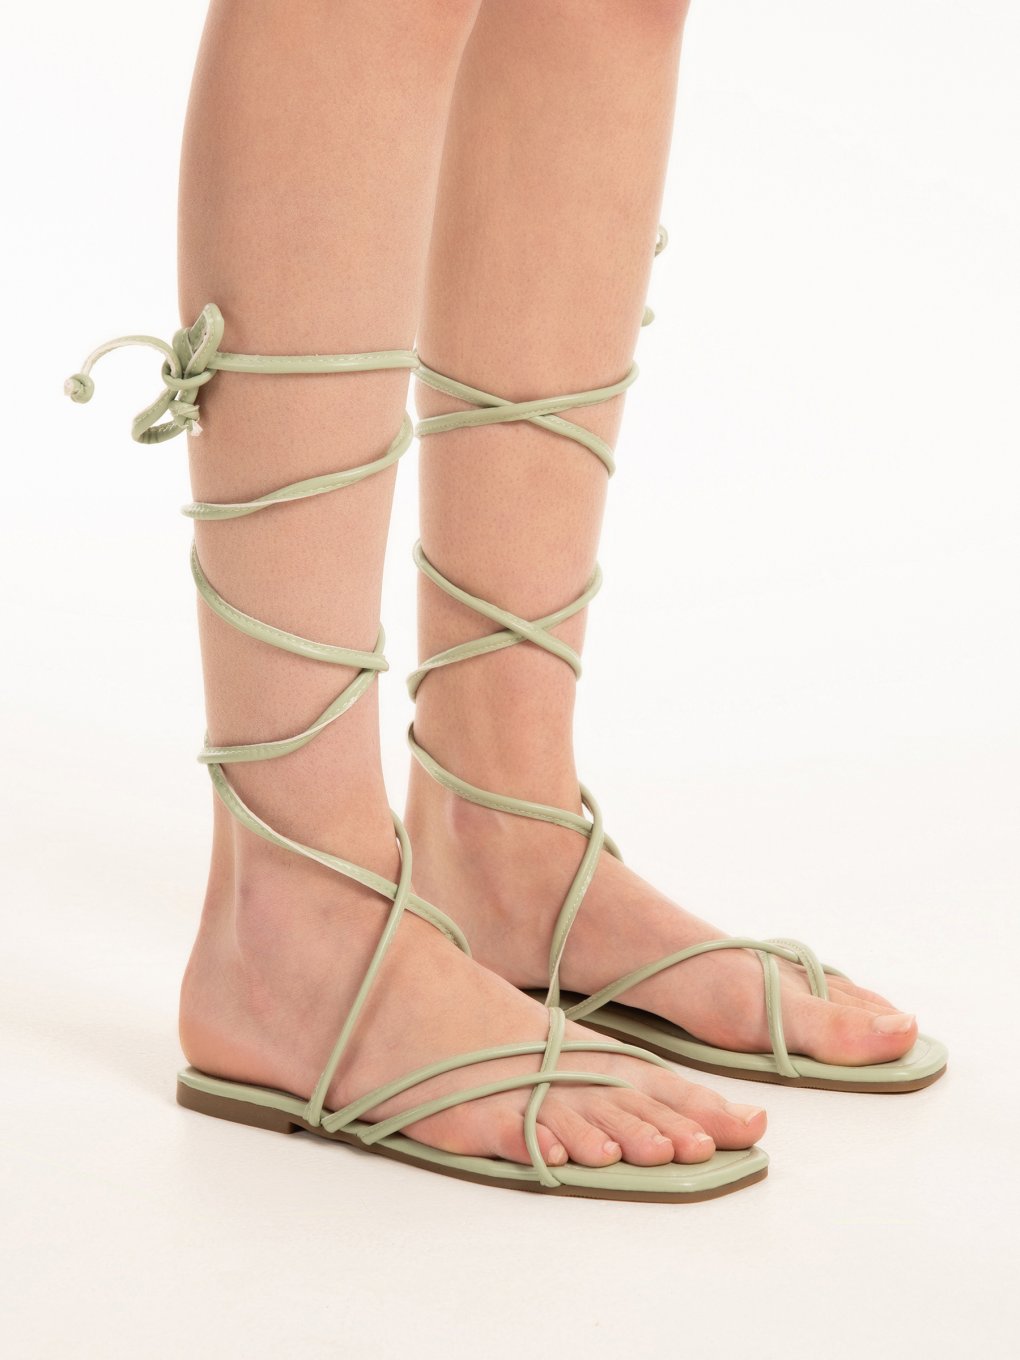 Lace-up flat sandals